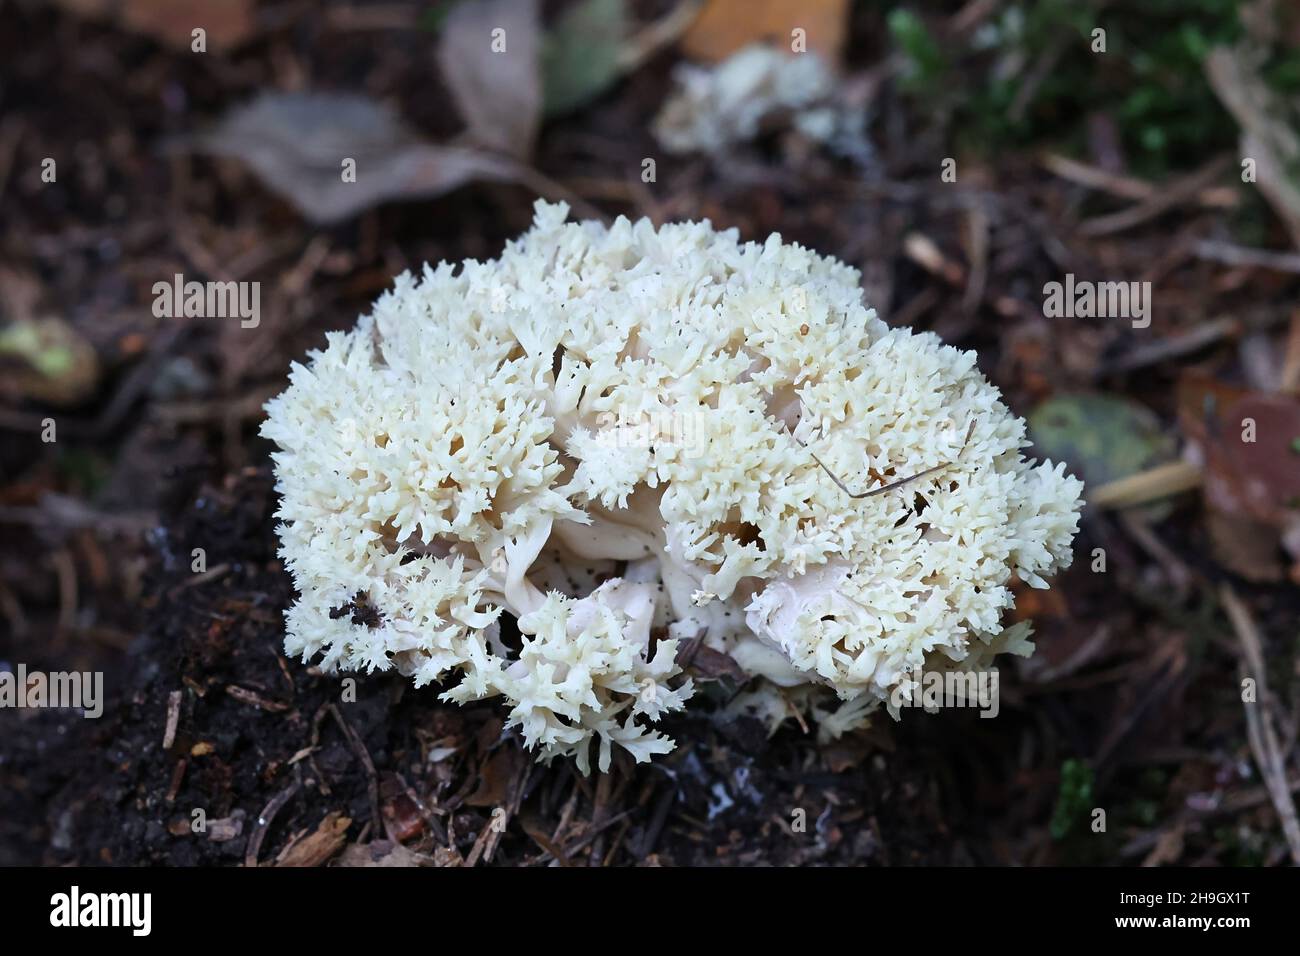 Clavulina coralloides, conosciuto anche come Clavulina cristata, il fungo corallino bianco o il fungo corallino crestato, fungo selvatico dalla Finlandia Foto Stock